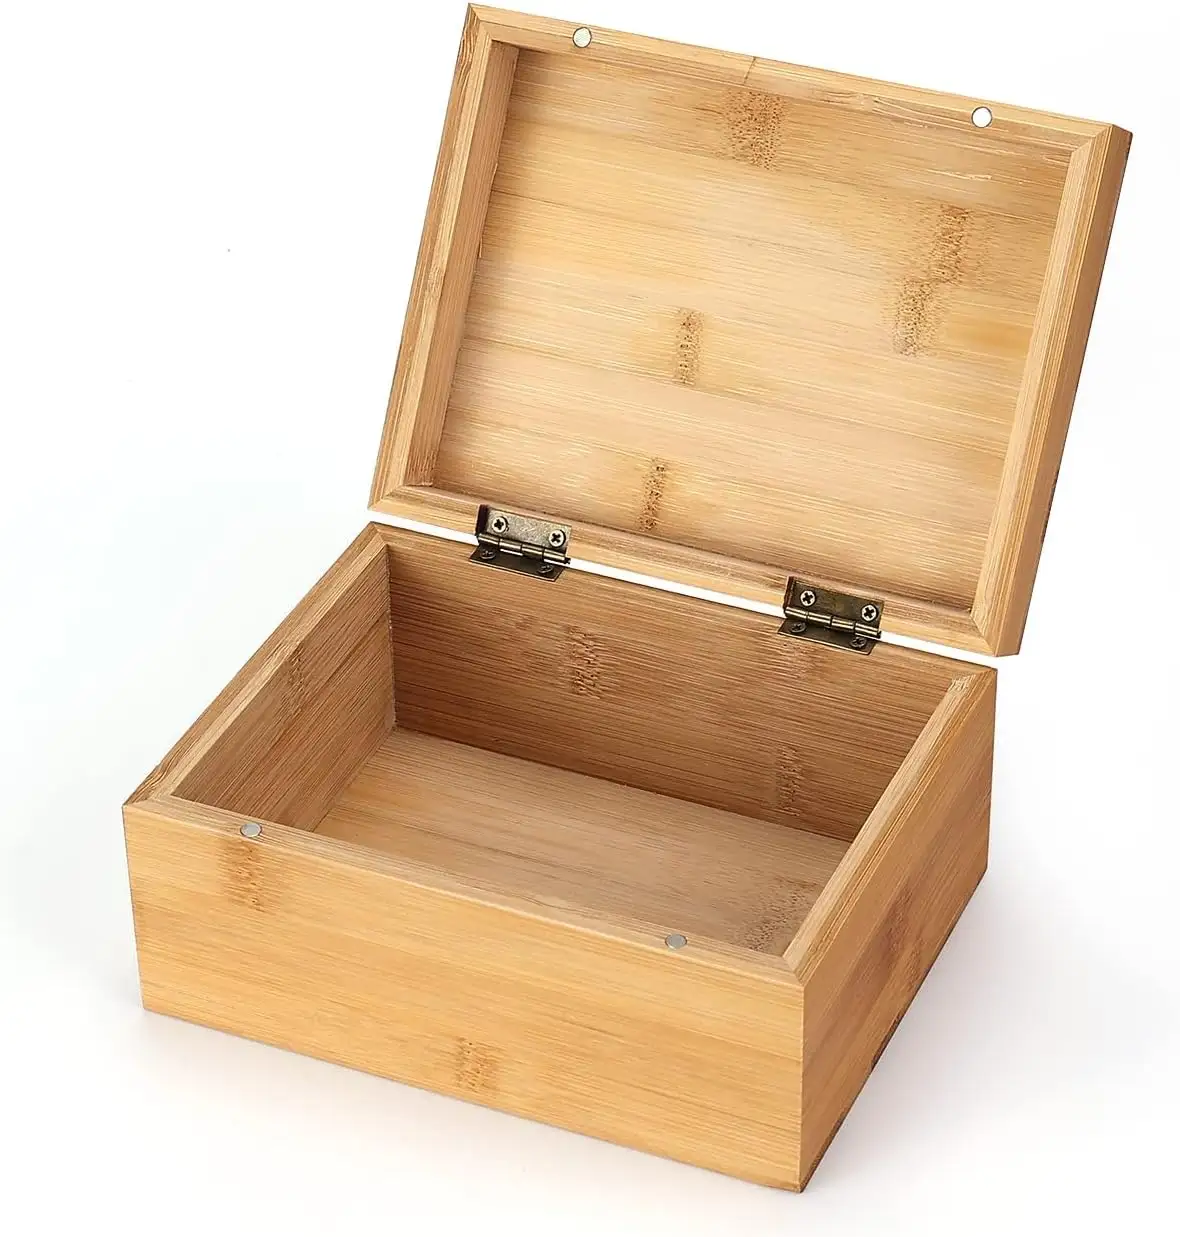 Kotak kayu bambu kecil penjualan laris untuk kerajinan seni dan hobi DIY, kotak dekorasi dan penyimpanan rumah kotak kenang-kenangan kayu hadiah